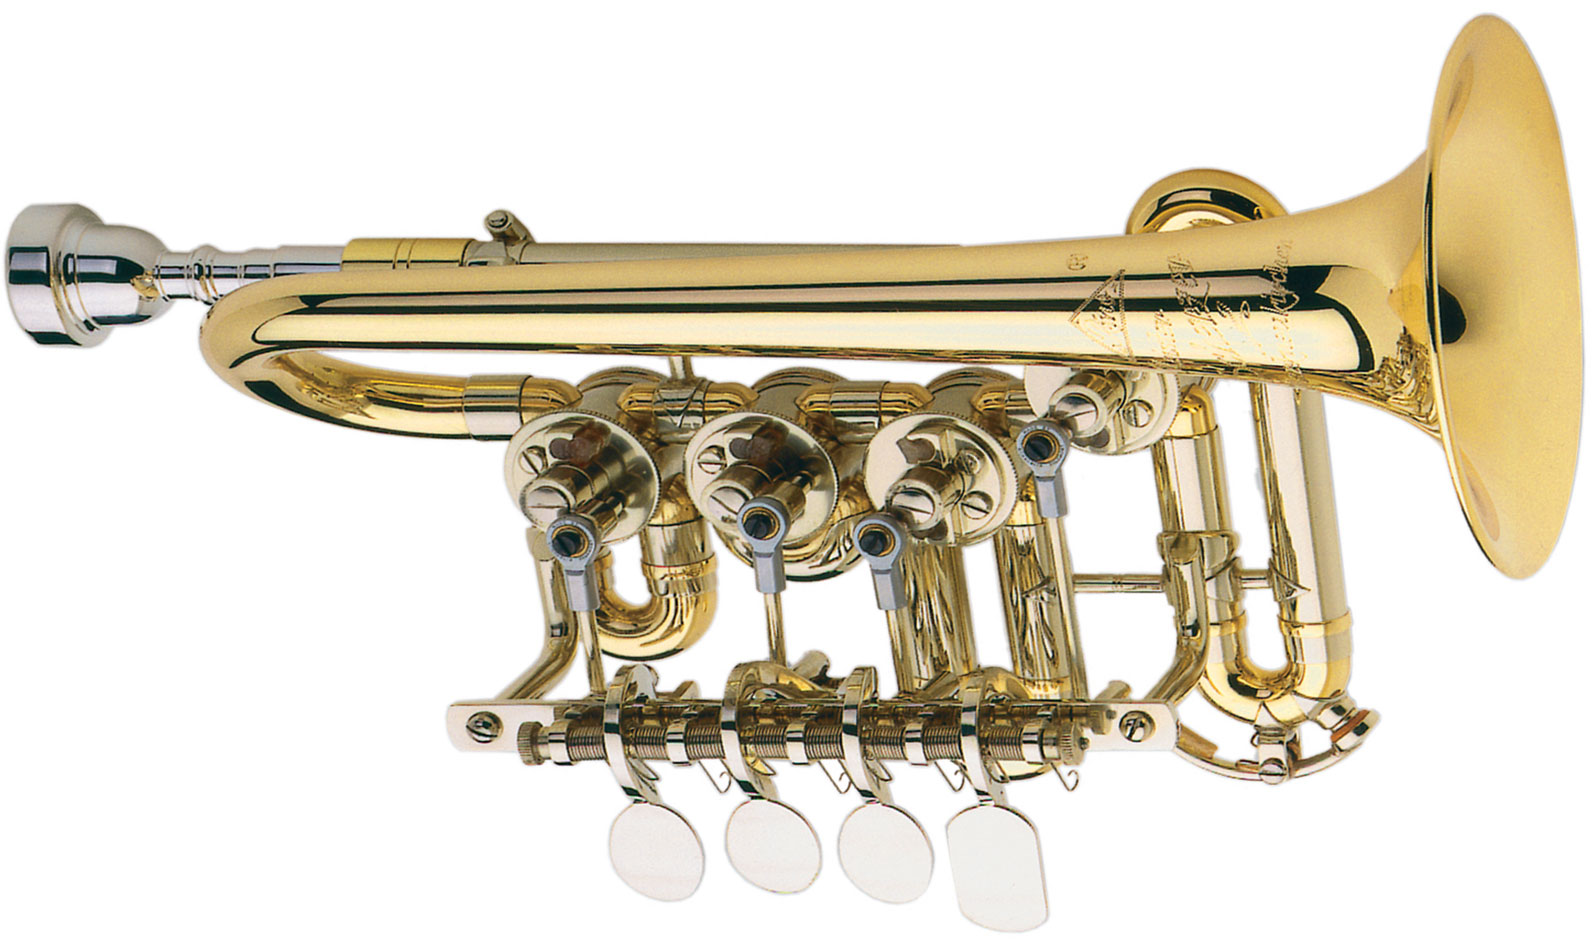 Купить трубу музыкальный инструмент. Труба-Пикколо музыкальный инструмент. Mk0035g труба-Пикколо Ritmuller. Труба-Пикколо медные духовые музыкальные инструменты. Старинные духовые инструменты.